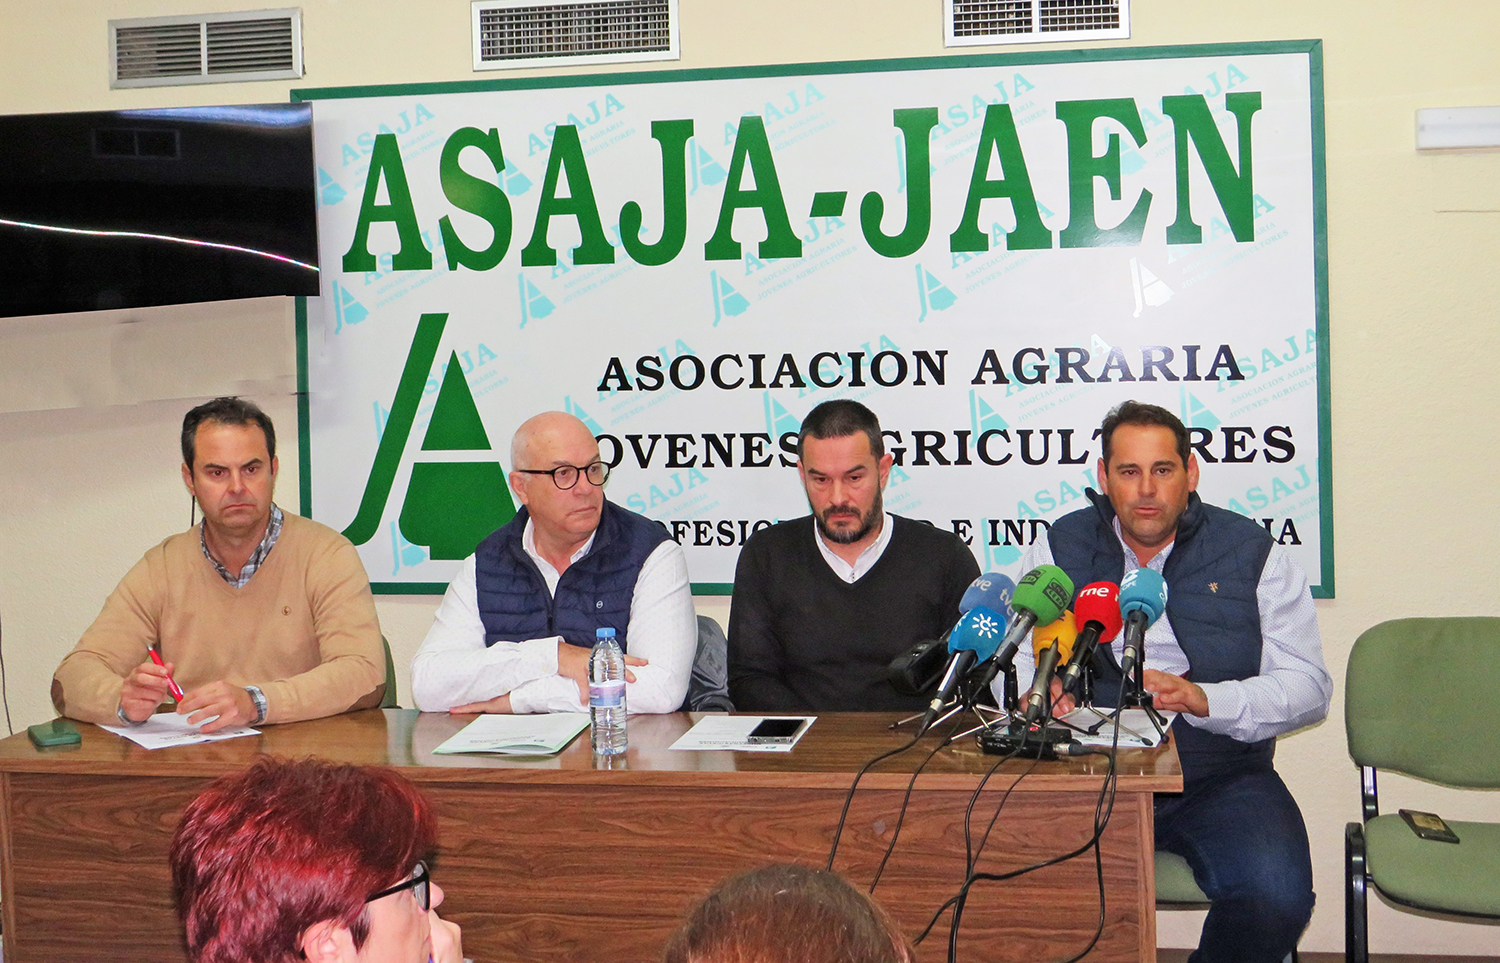 Llamamiento de UPA, COAG y ASJA con Cooperativas Agrarias en Jaén para participar en el corte de la A-4 el próximo día 14